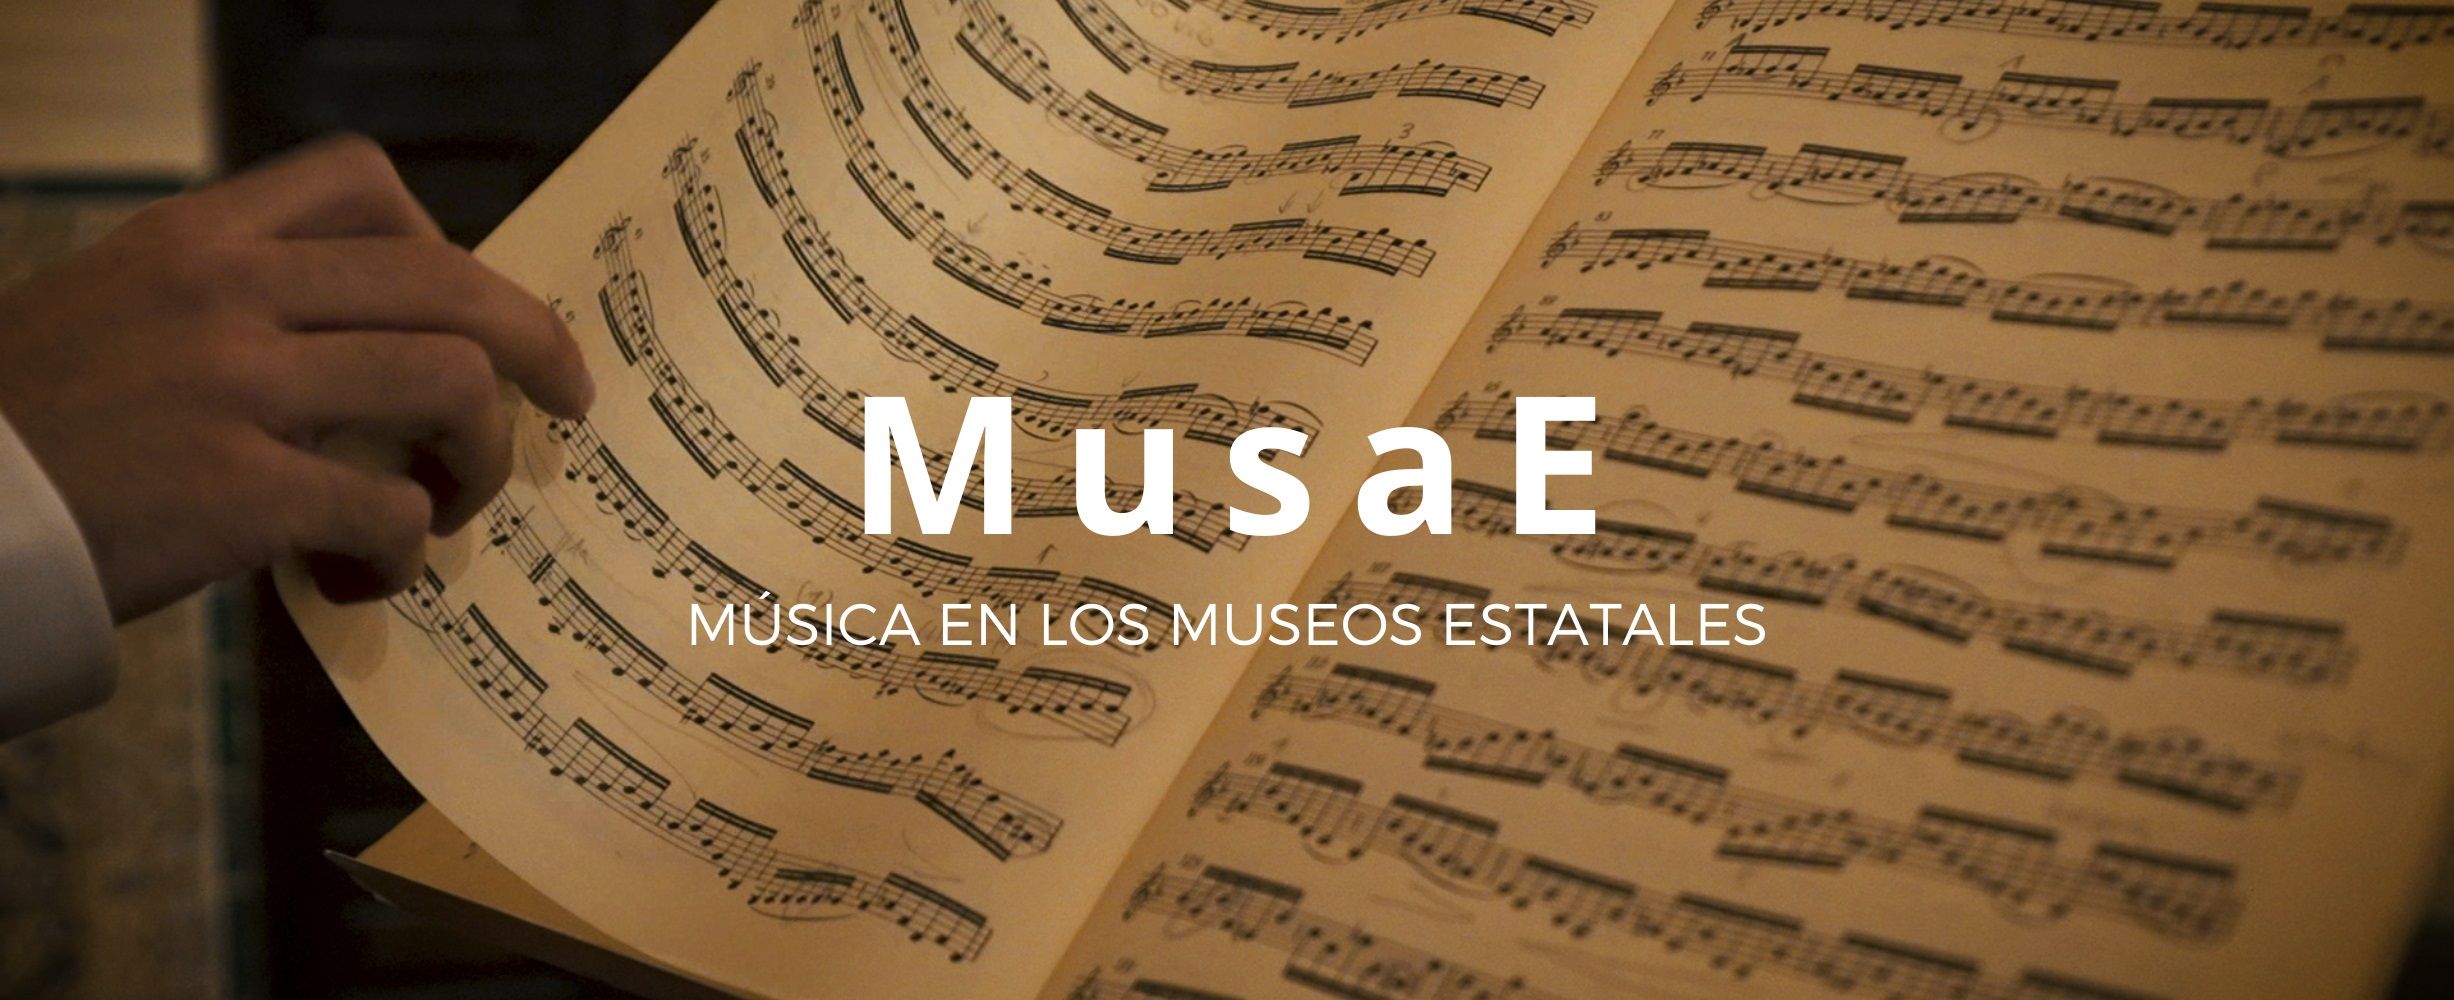 MusaE. Música en los Museos Estatales